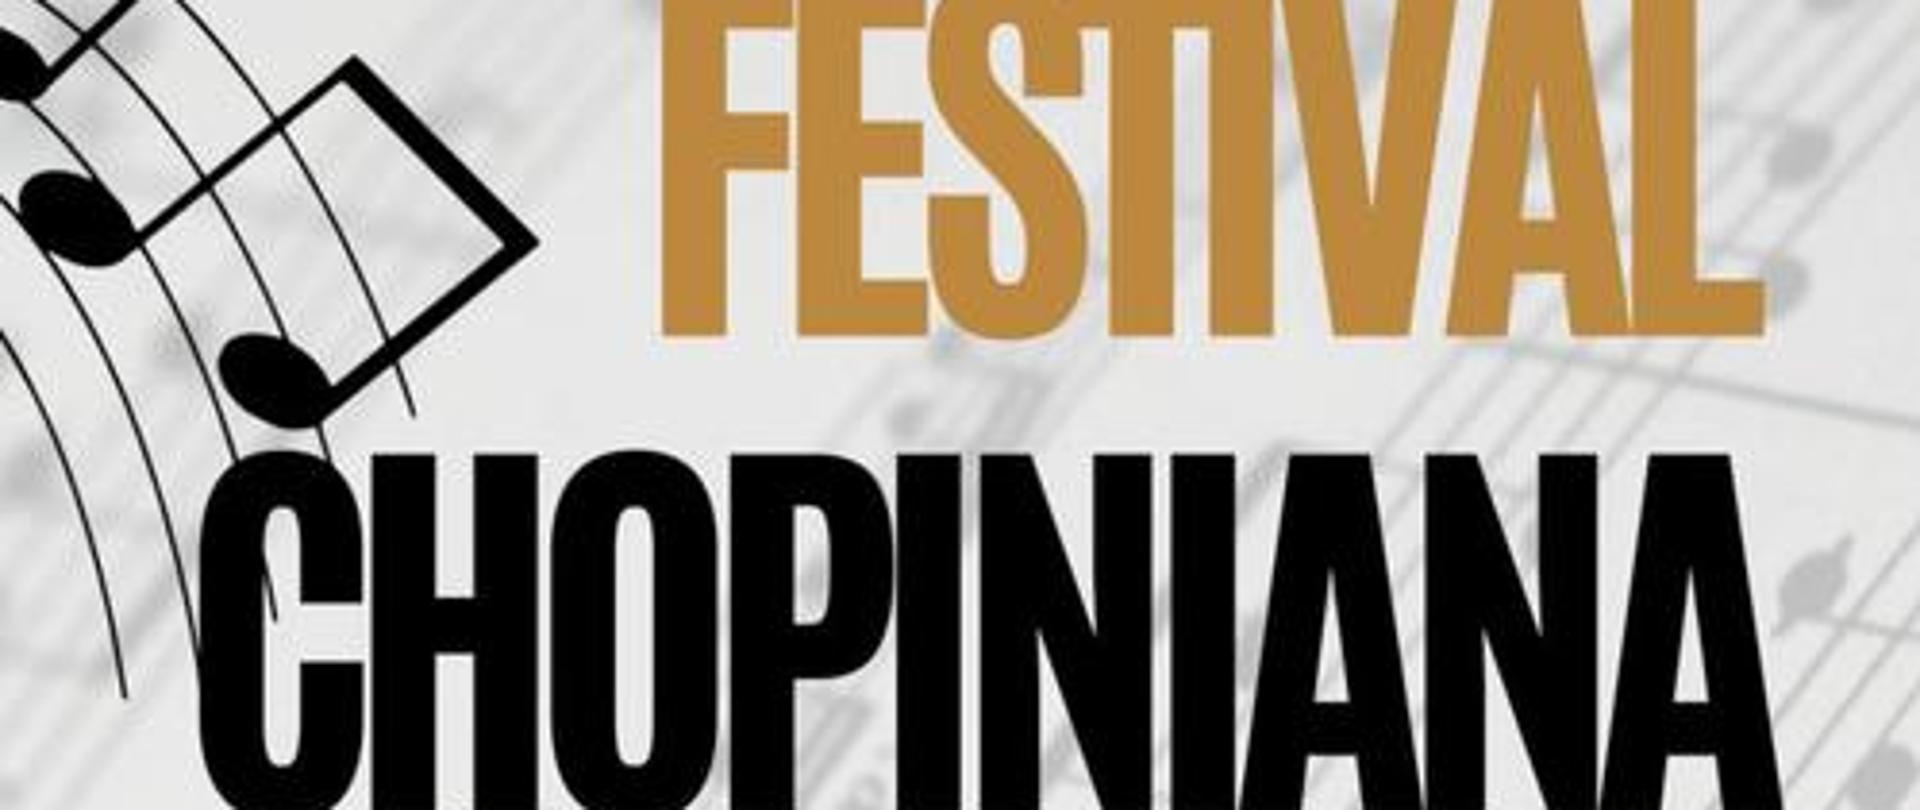 Fundación Chopiniana Argentina pod przewodnictwem cenionej pianistki Marthy Noguera, organizuje kolejną edycję międzynarodowego festiwalu Chopiniana 2022.